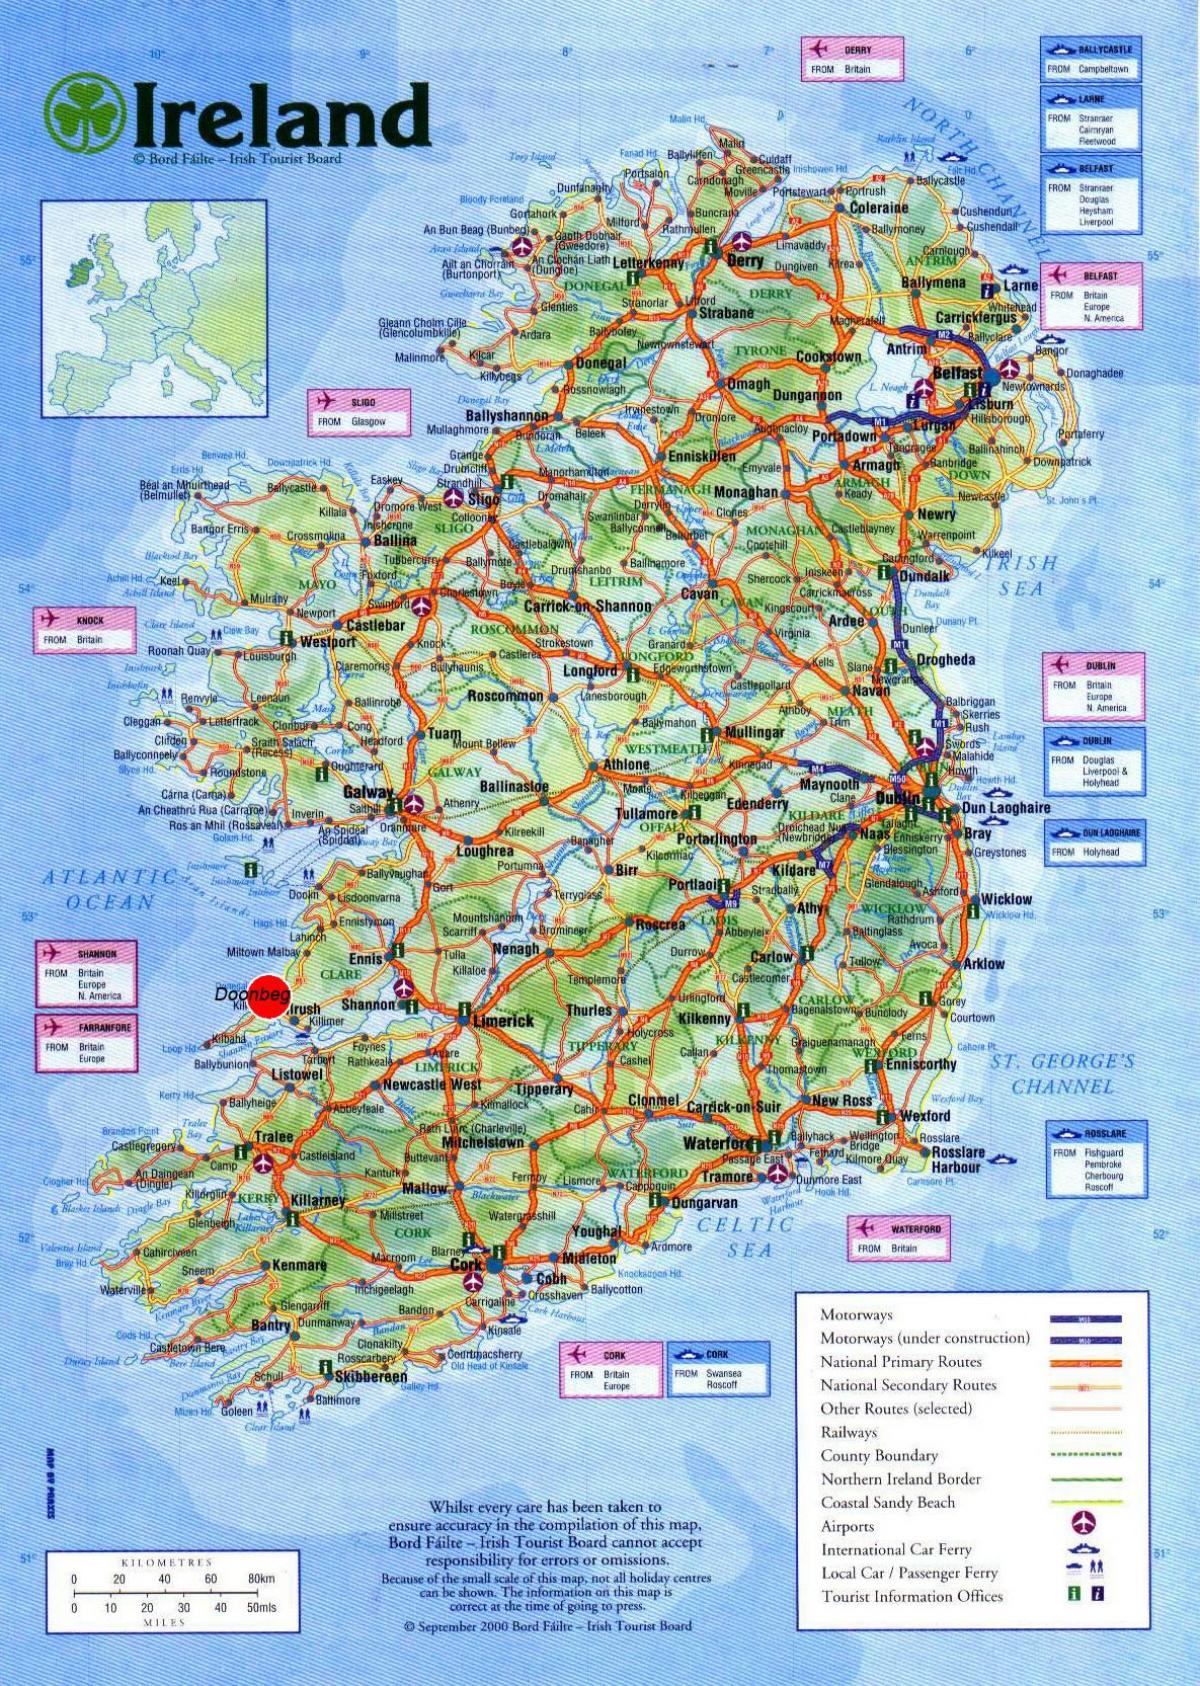 نقشه از ایرلند نشان دادن جاذبه های توریستی